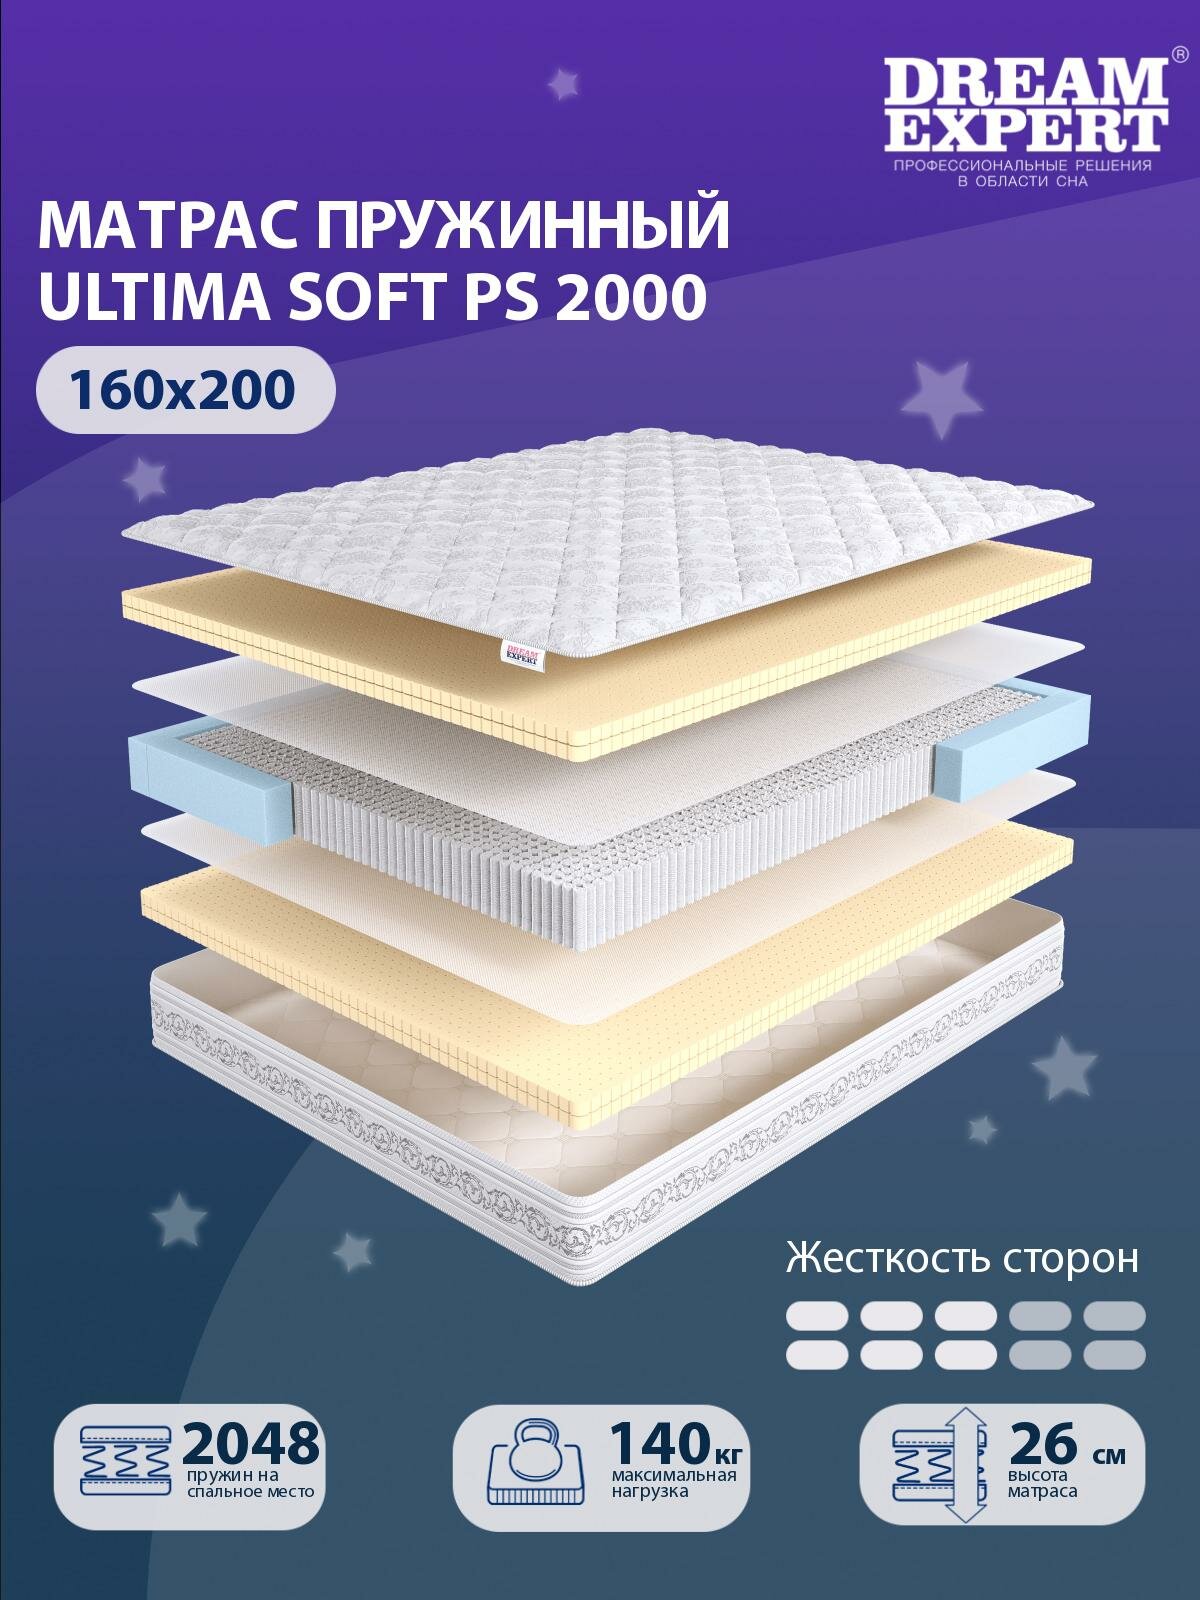 Матрас DreamExpert Ultima Soft PS2000 средней жесткости, двуспальный, независимый пружинный блок, на кровать 160x200